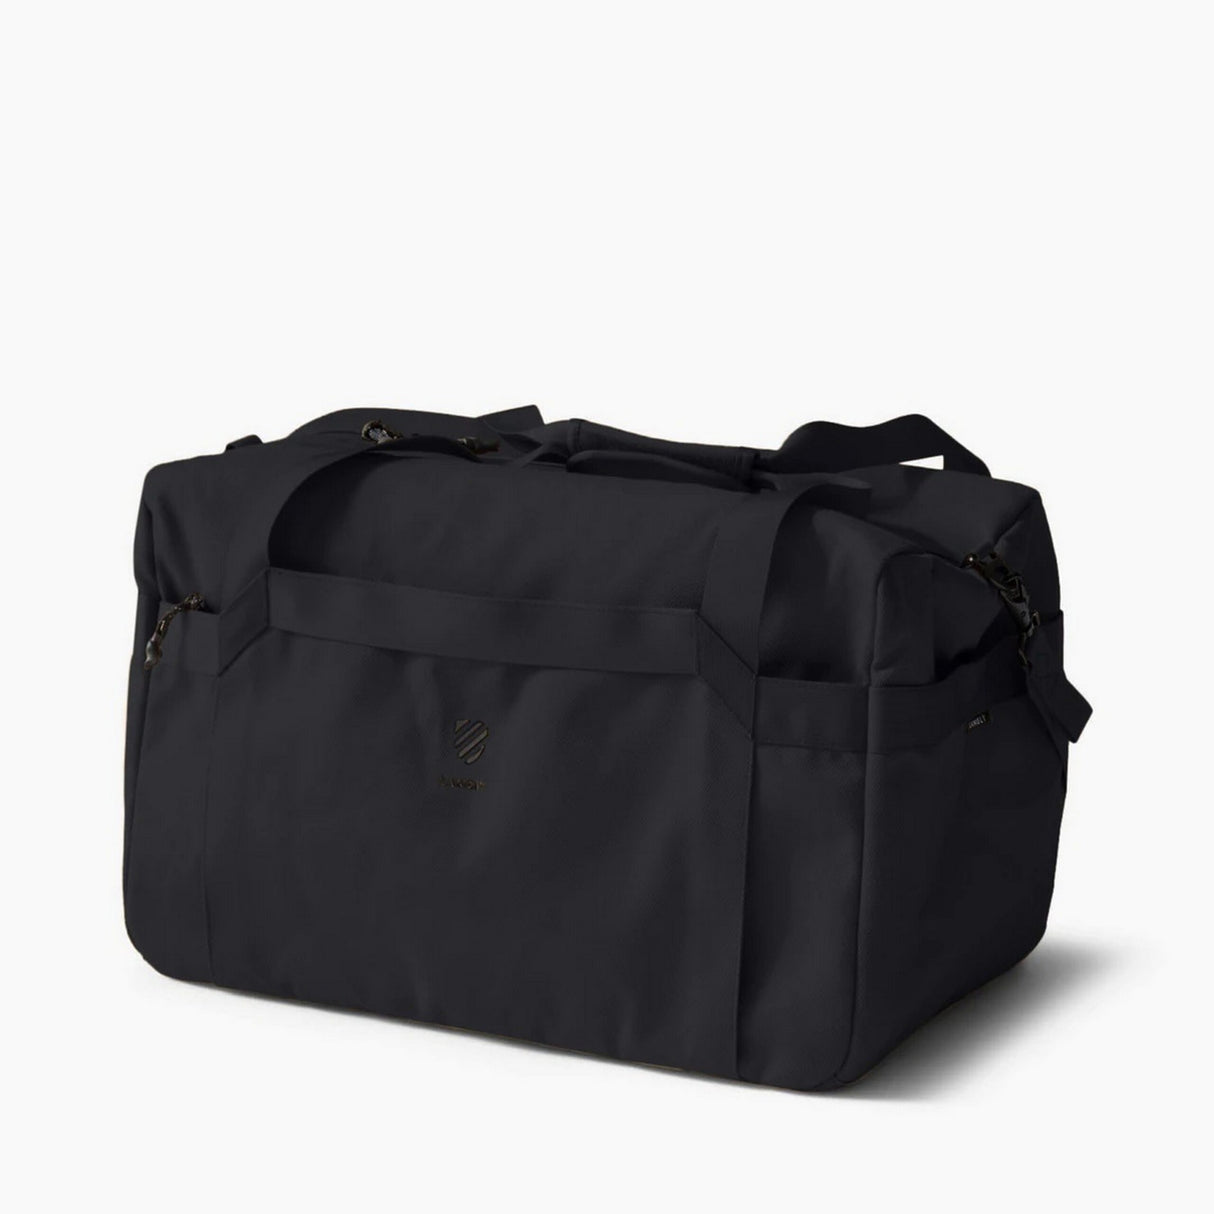 Langly Weekender Duffle Bag, Black